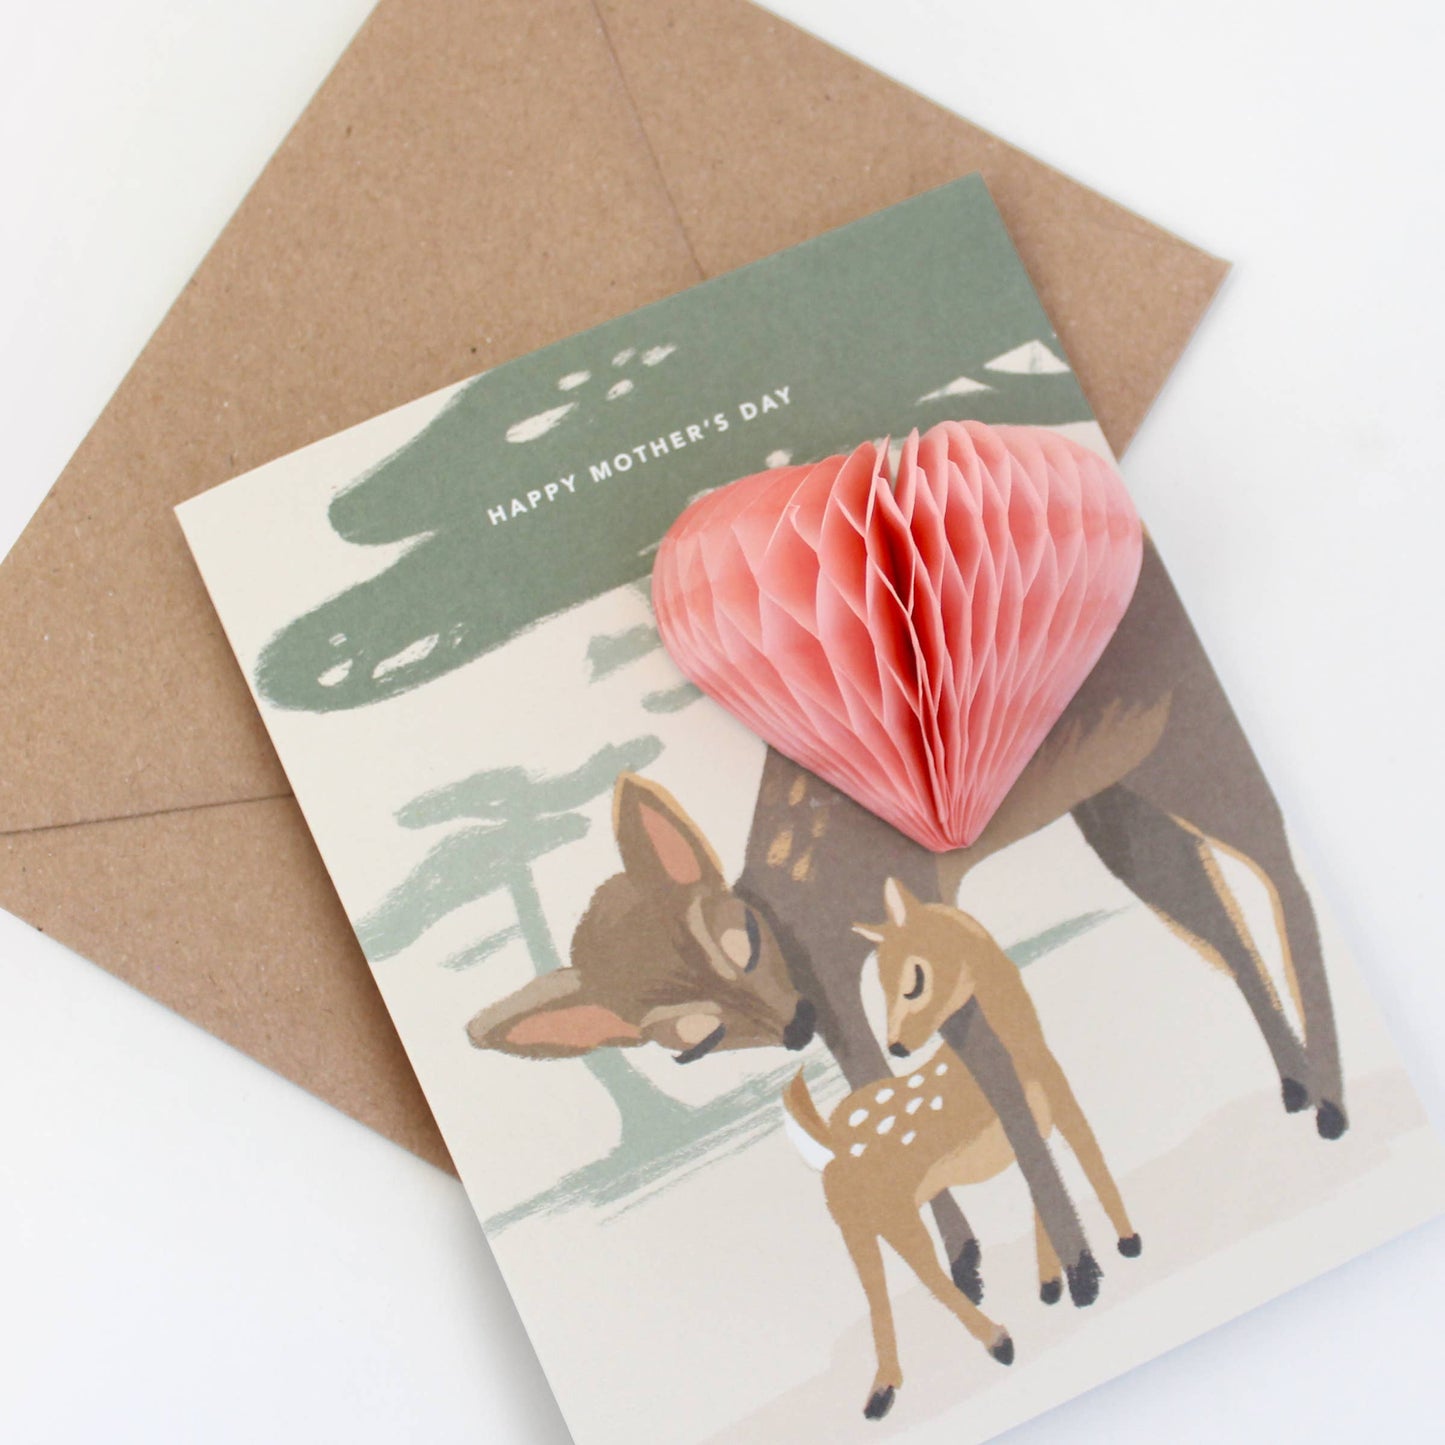 Pop-up Mother Deer Card